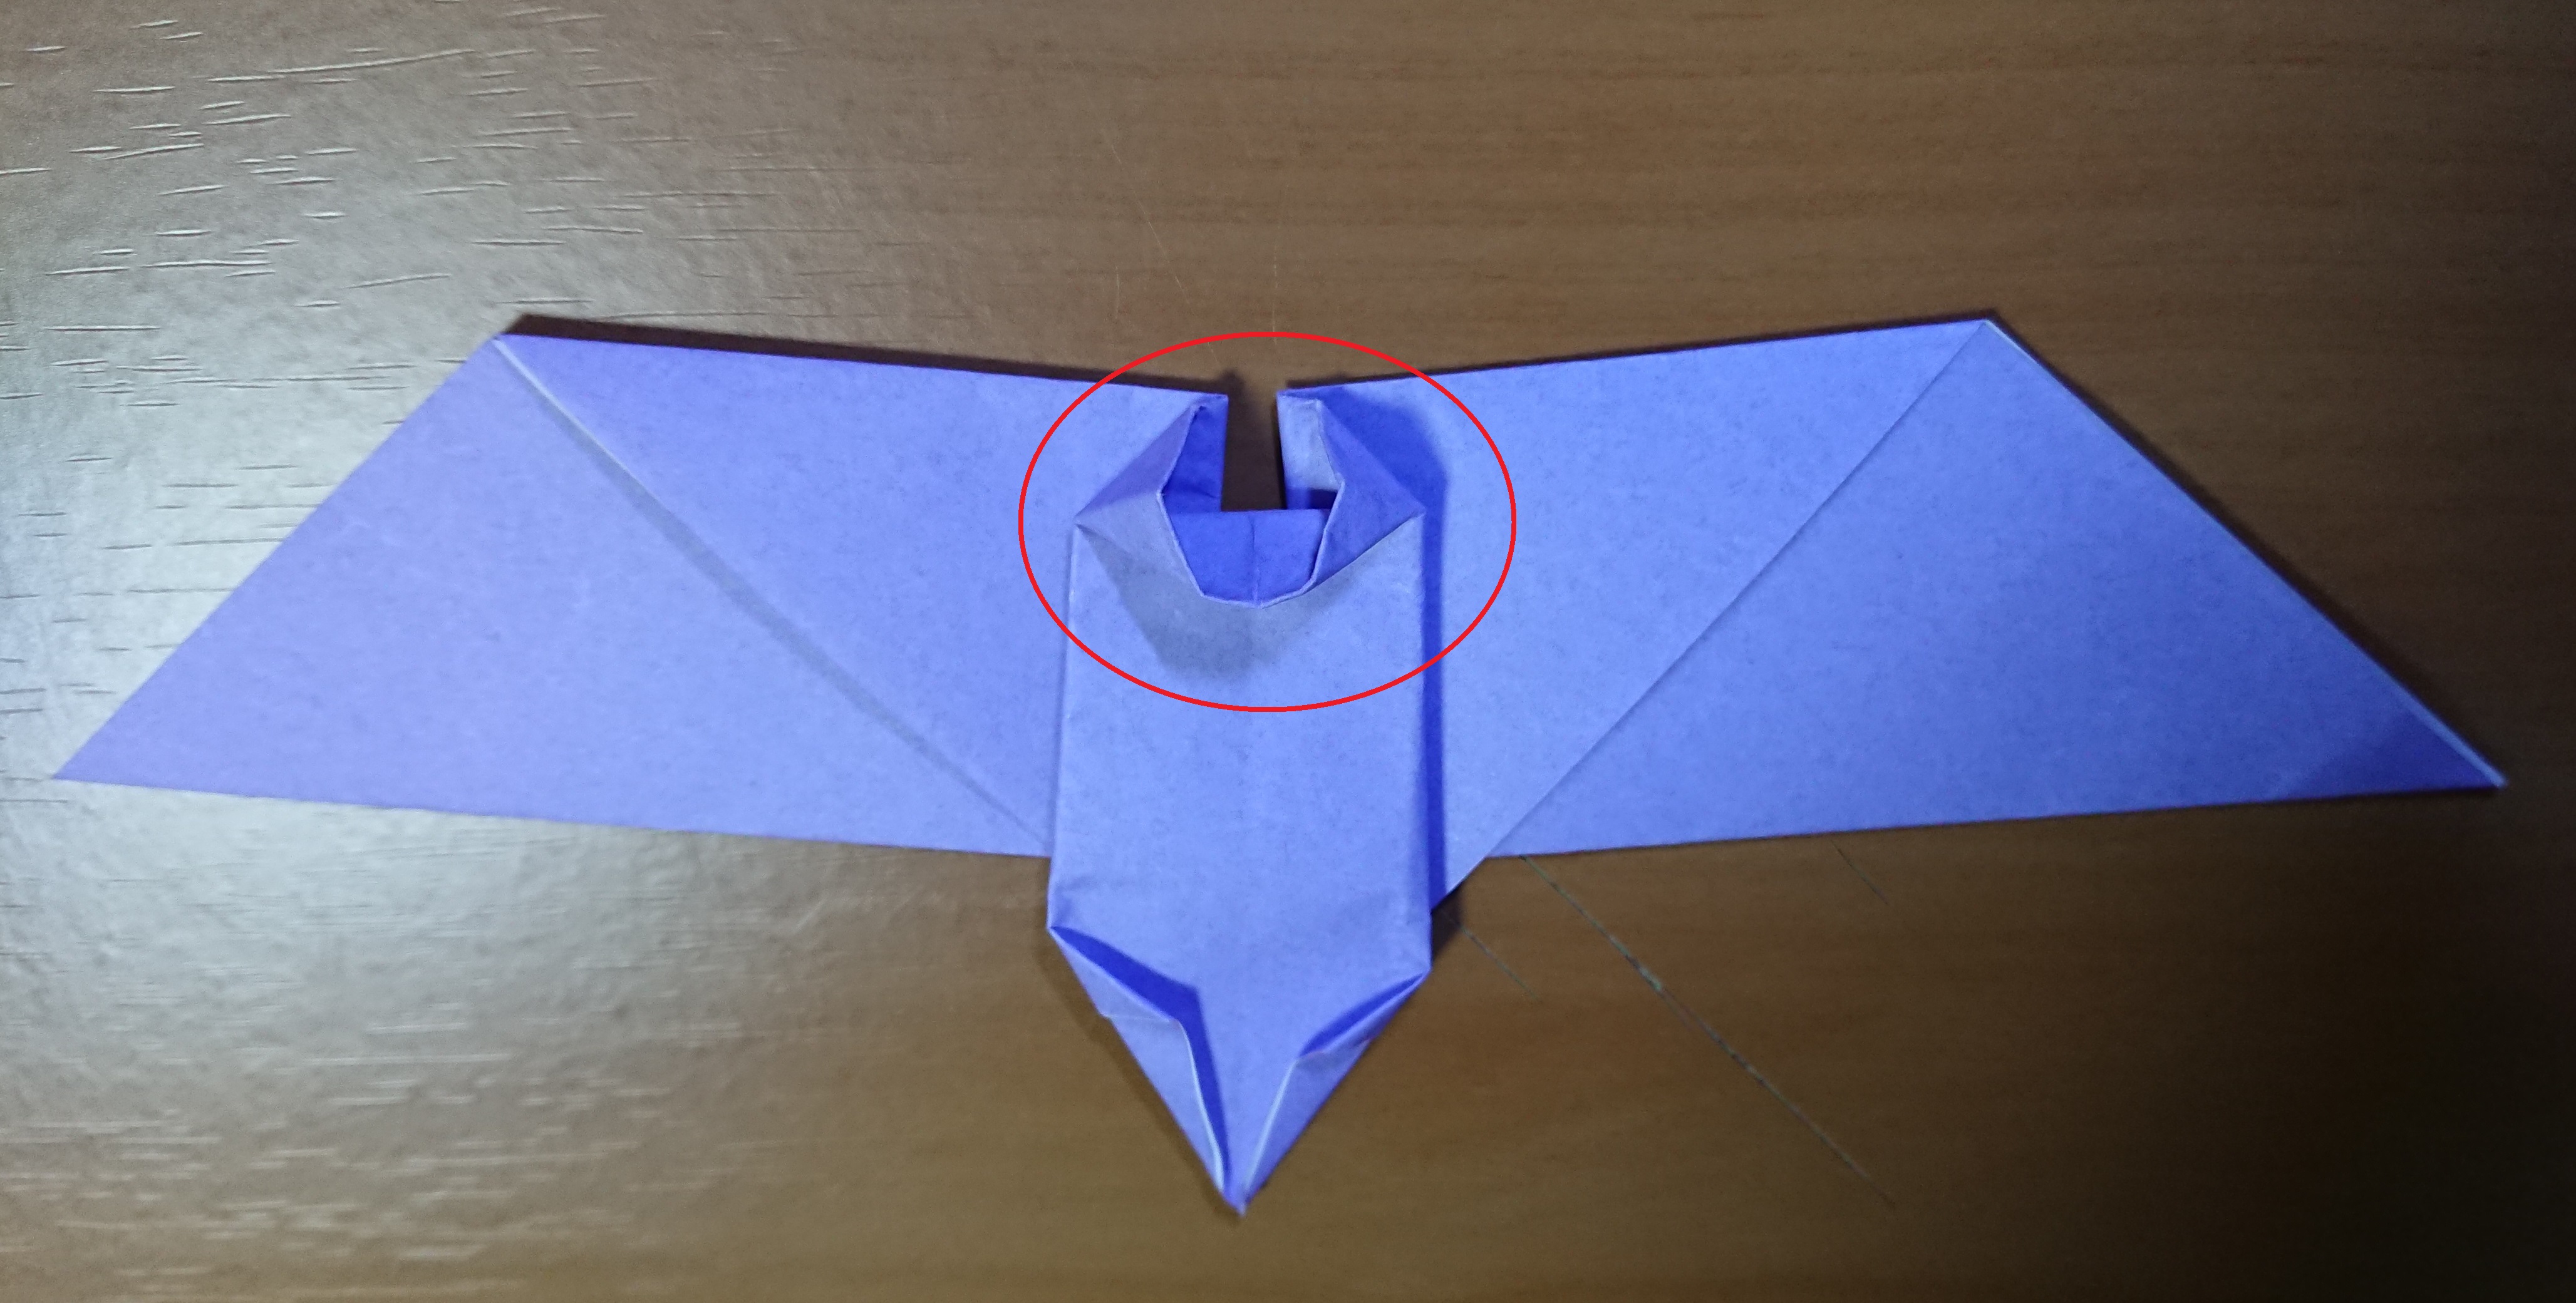 ハロウィン 折り紙でコウモリの簡単な折り方 画像解説付き シゲキタイムズ